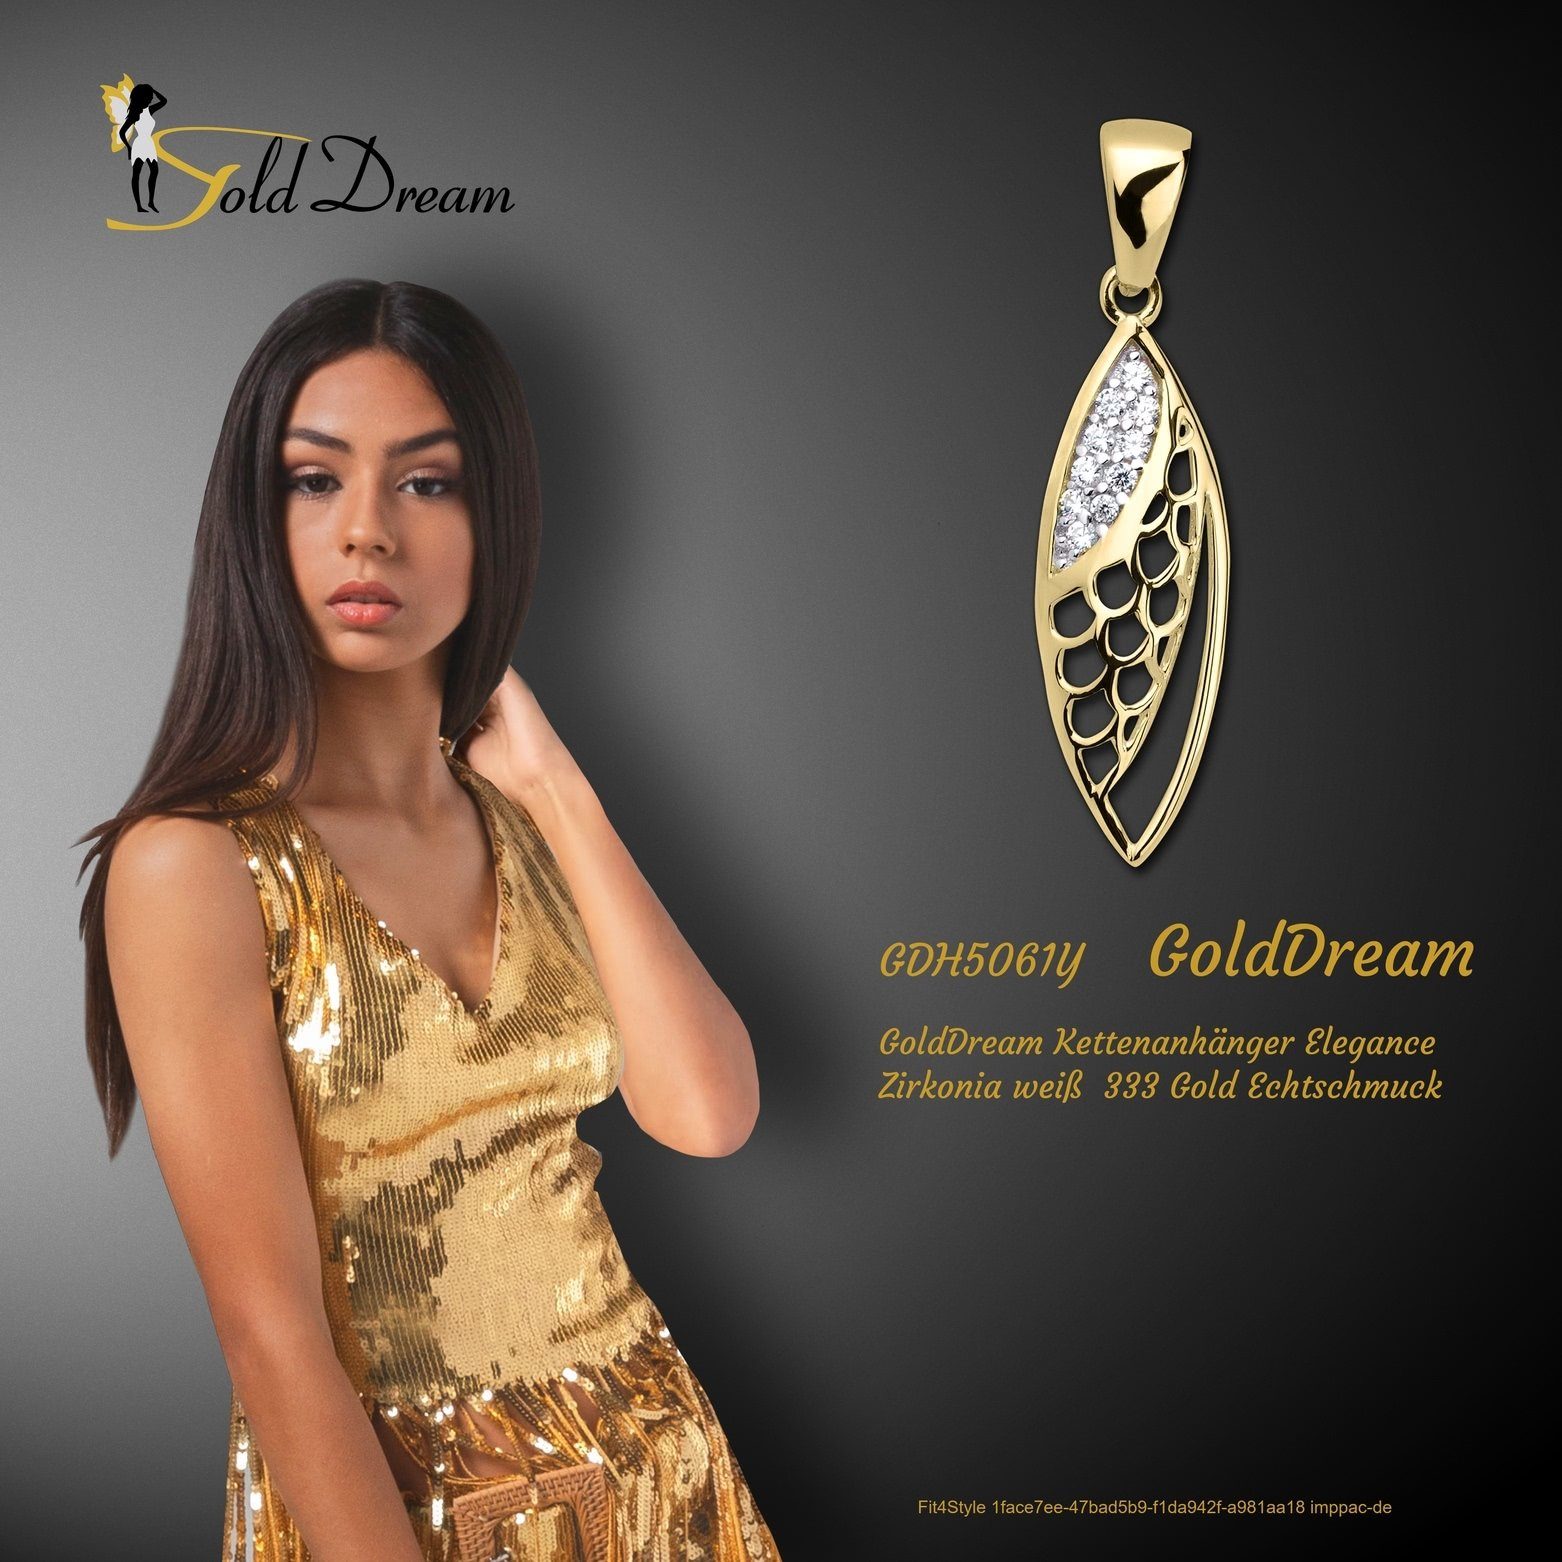 Gelbgold GoldDream GoldDream Damen Eleganceanhänger 333 8 Kettenanhänger - Karat, Kettenanhänger, Elegance gold, weiß